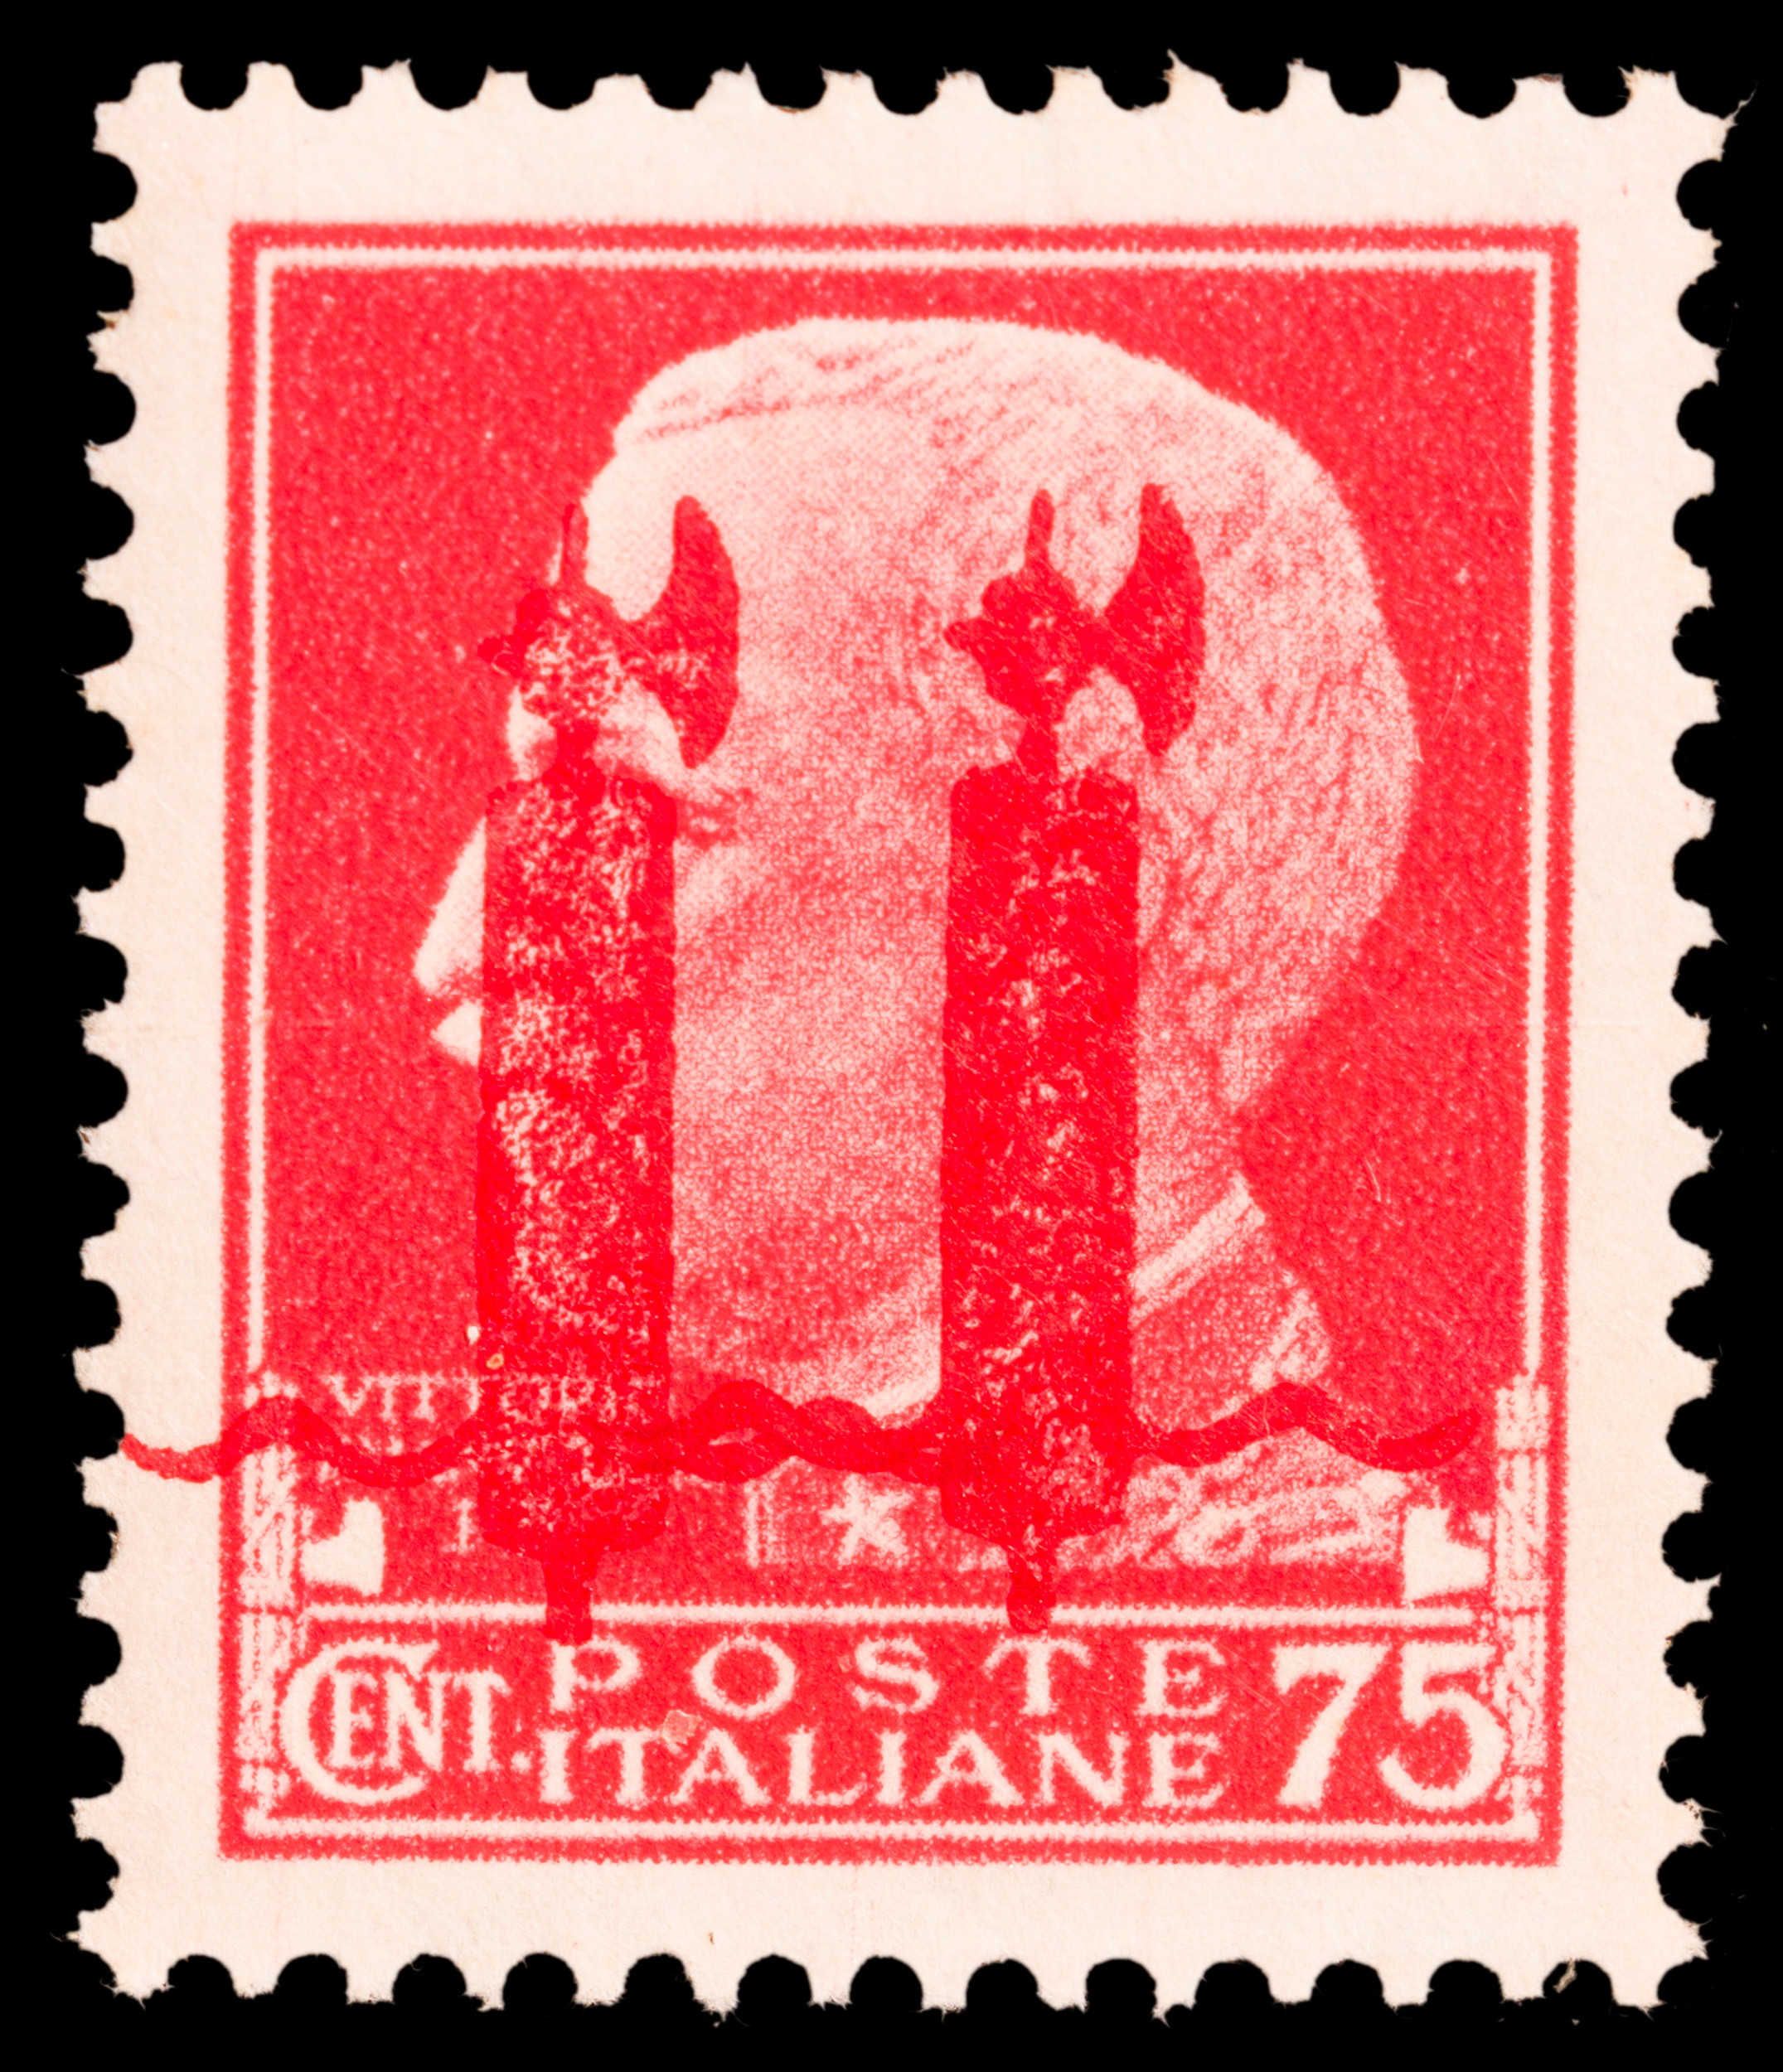 1944, REPUBBLICA SOCIALE ITALIANA - Image 2 of 6